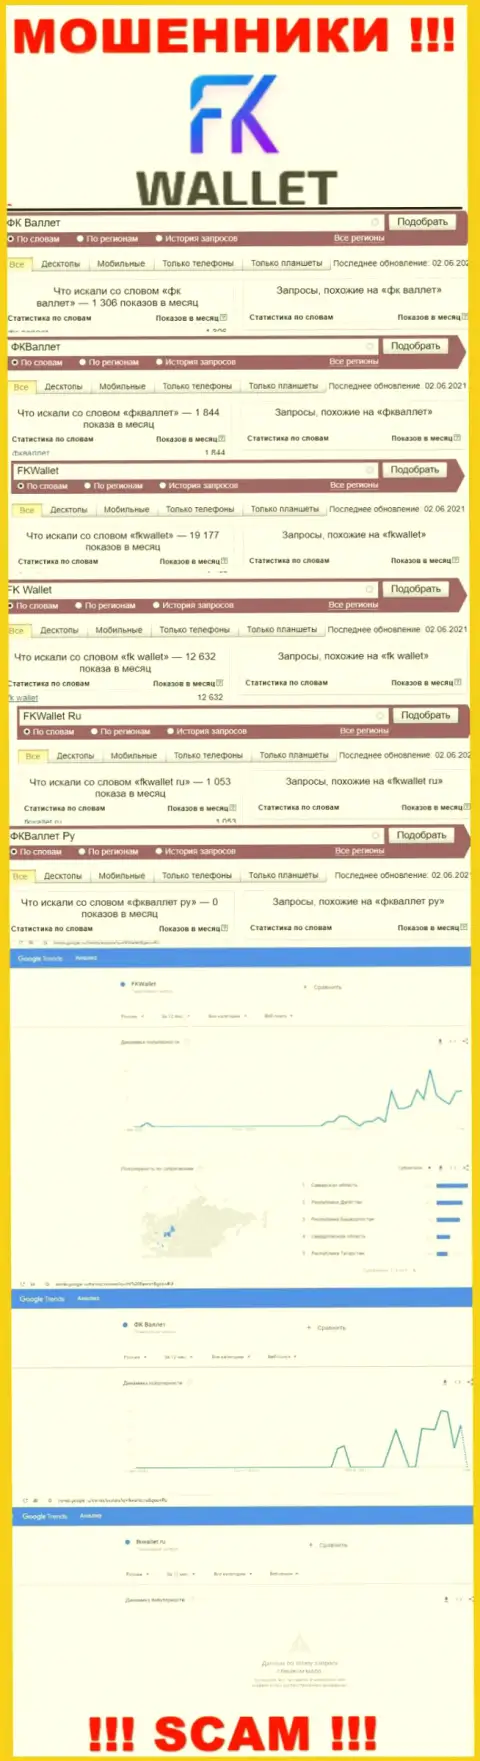 Скрин статистических показателей online запросов по мошеннической конторе FKWallet